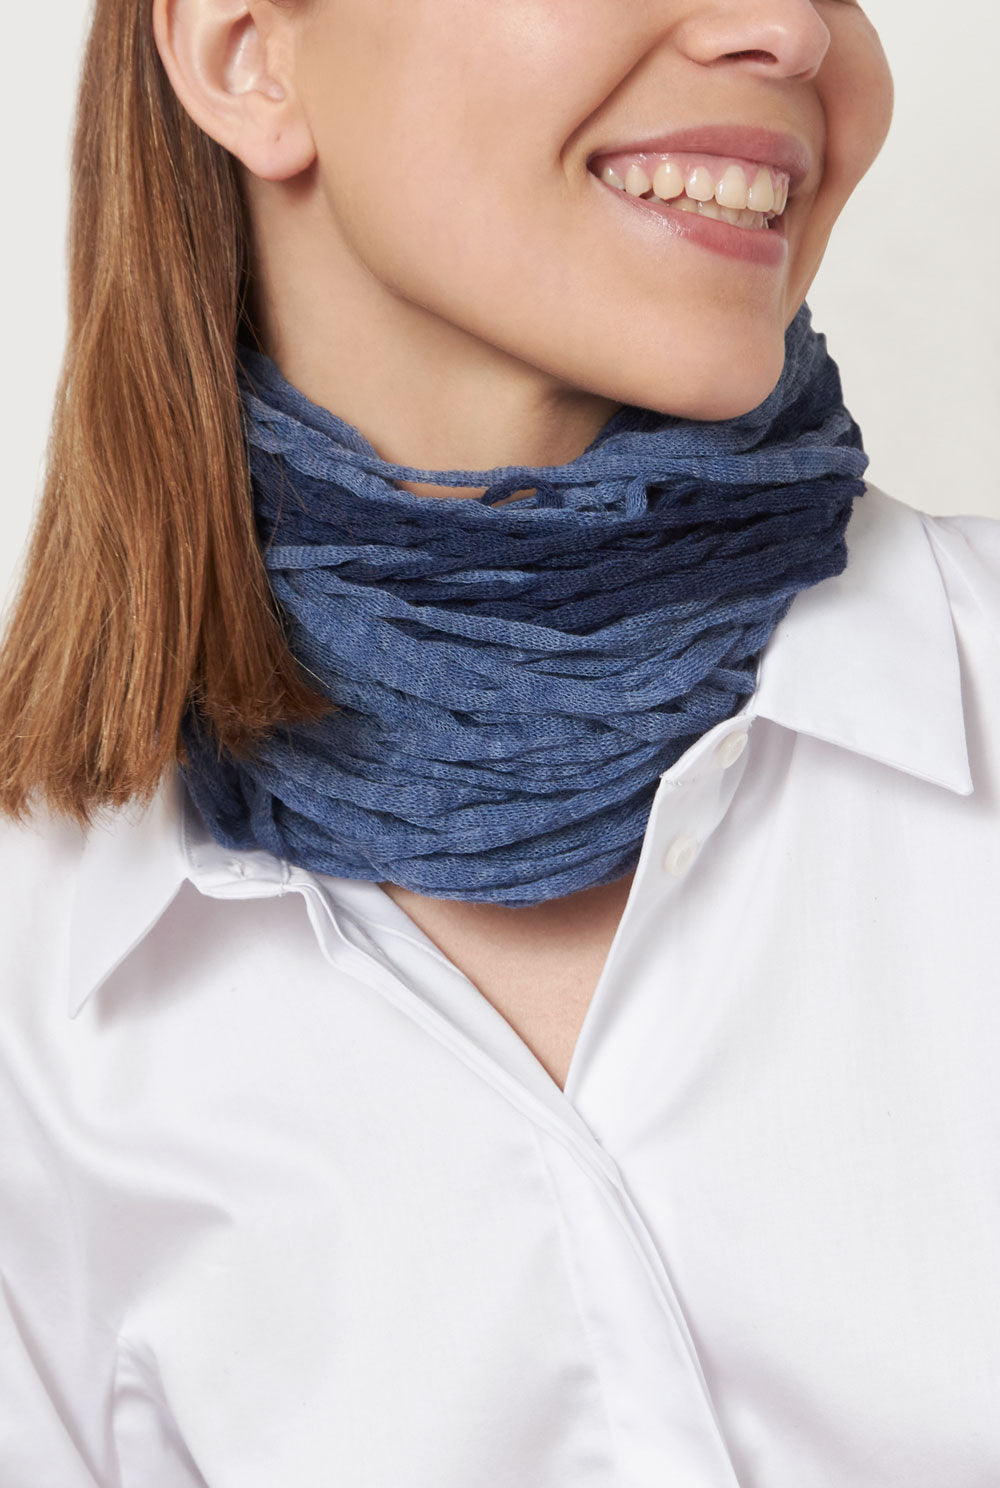 Wool necklace azul - Cuello antianginas Neckclace Victoria de Talhora 